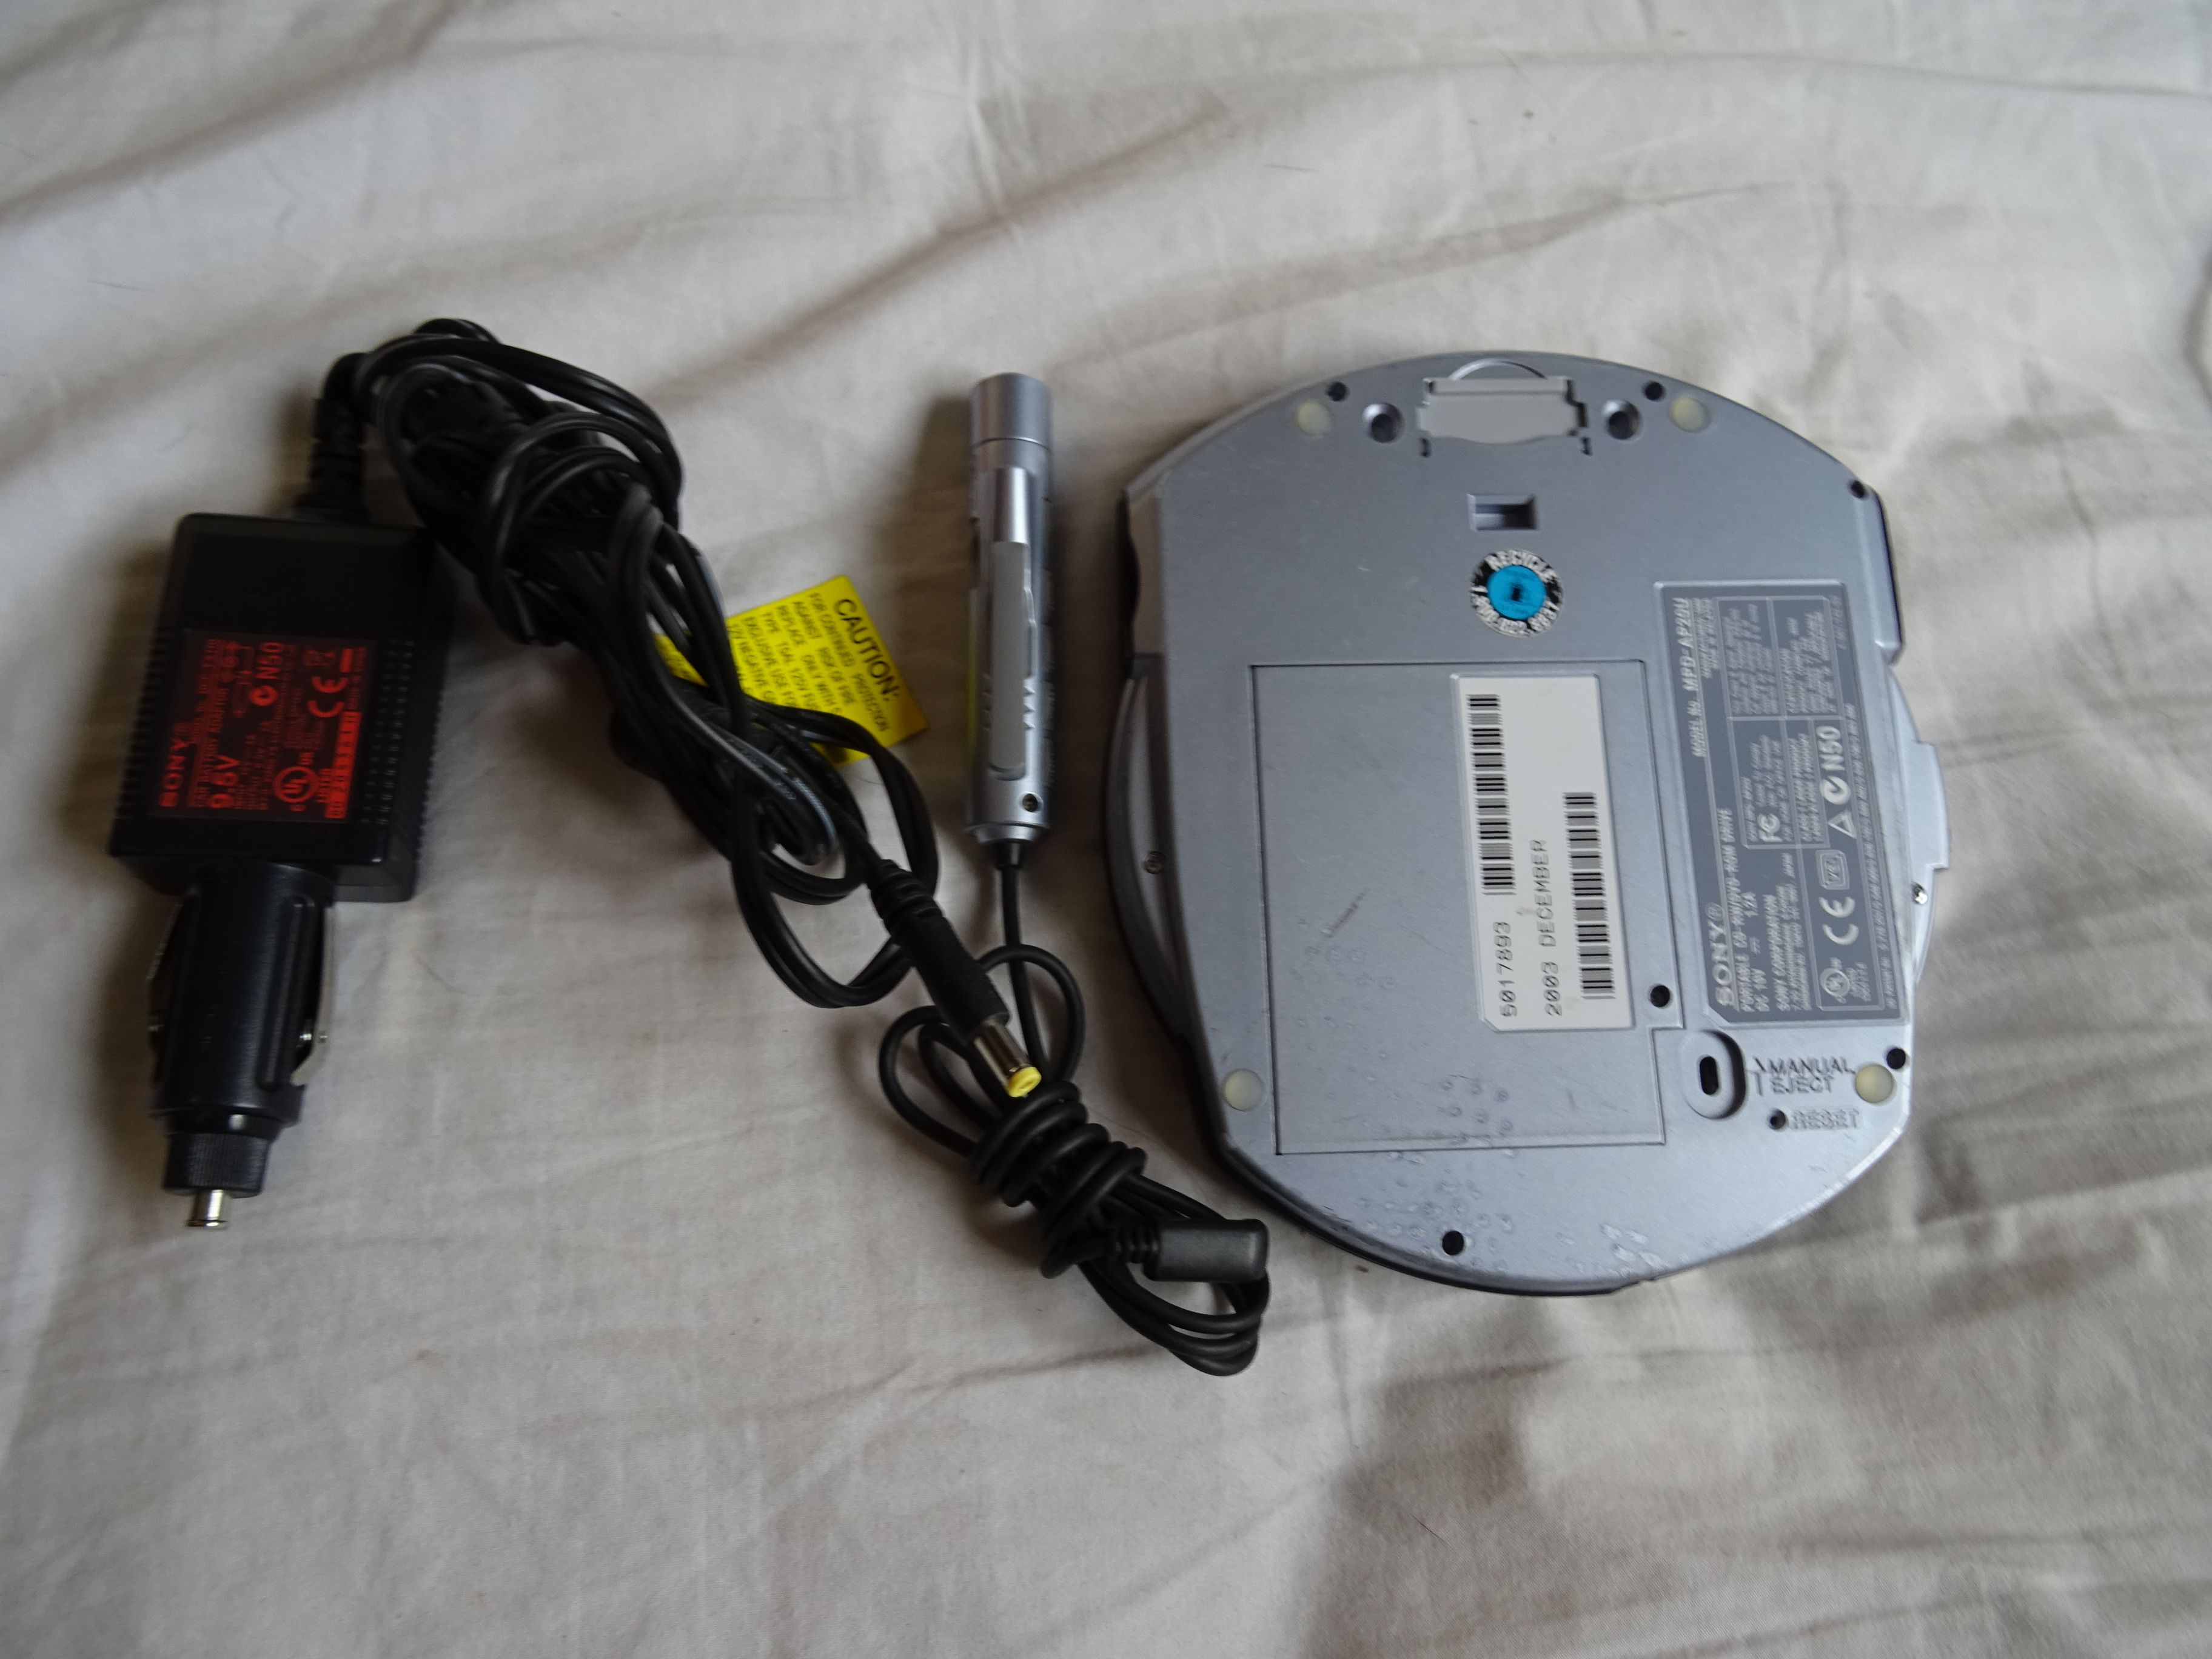 Sony MPD AP20U - Disk drive - CD-RW / DVD-ROM combo - 24x10x24x/8x - Hi-Speed USB - external used